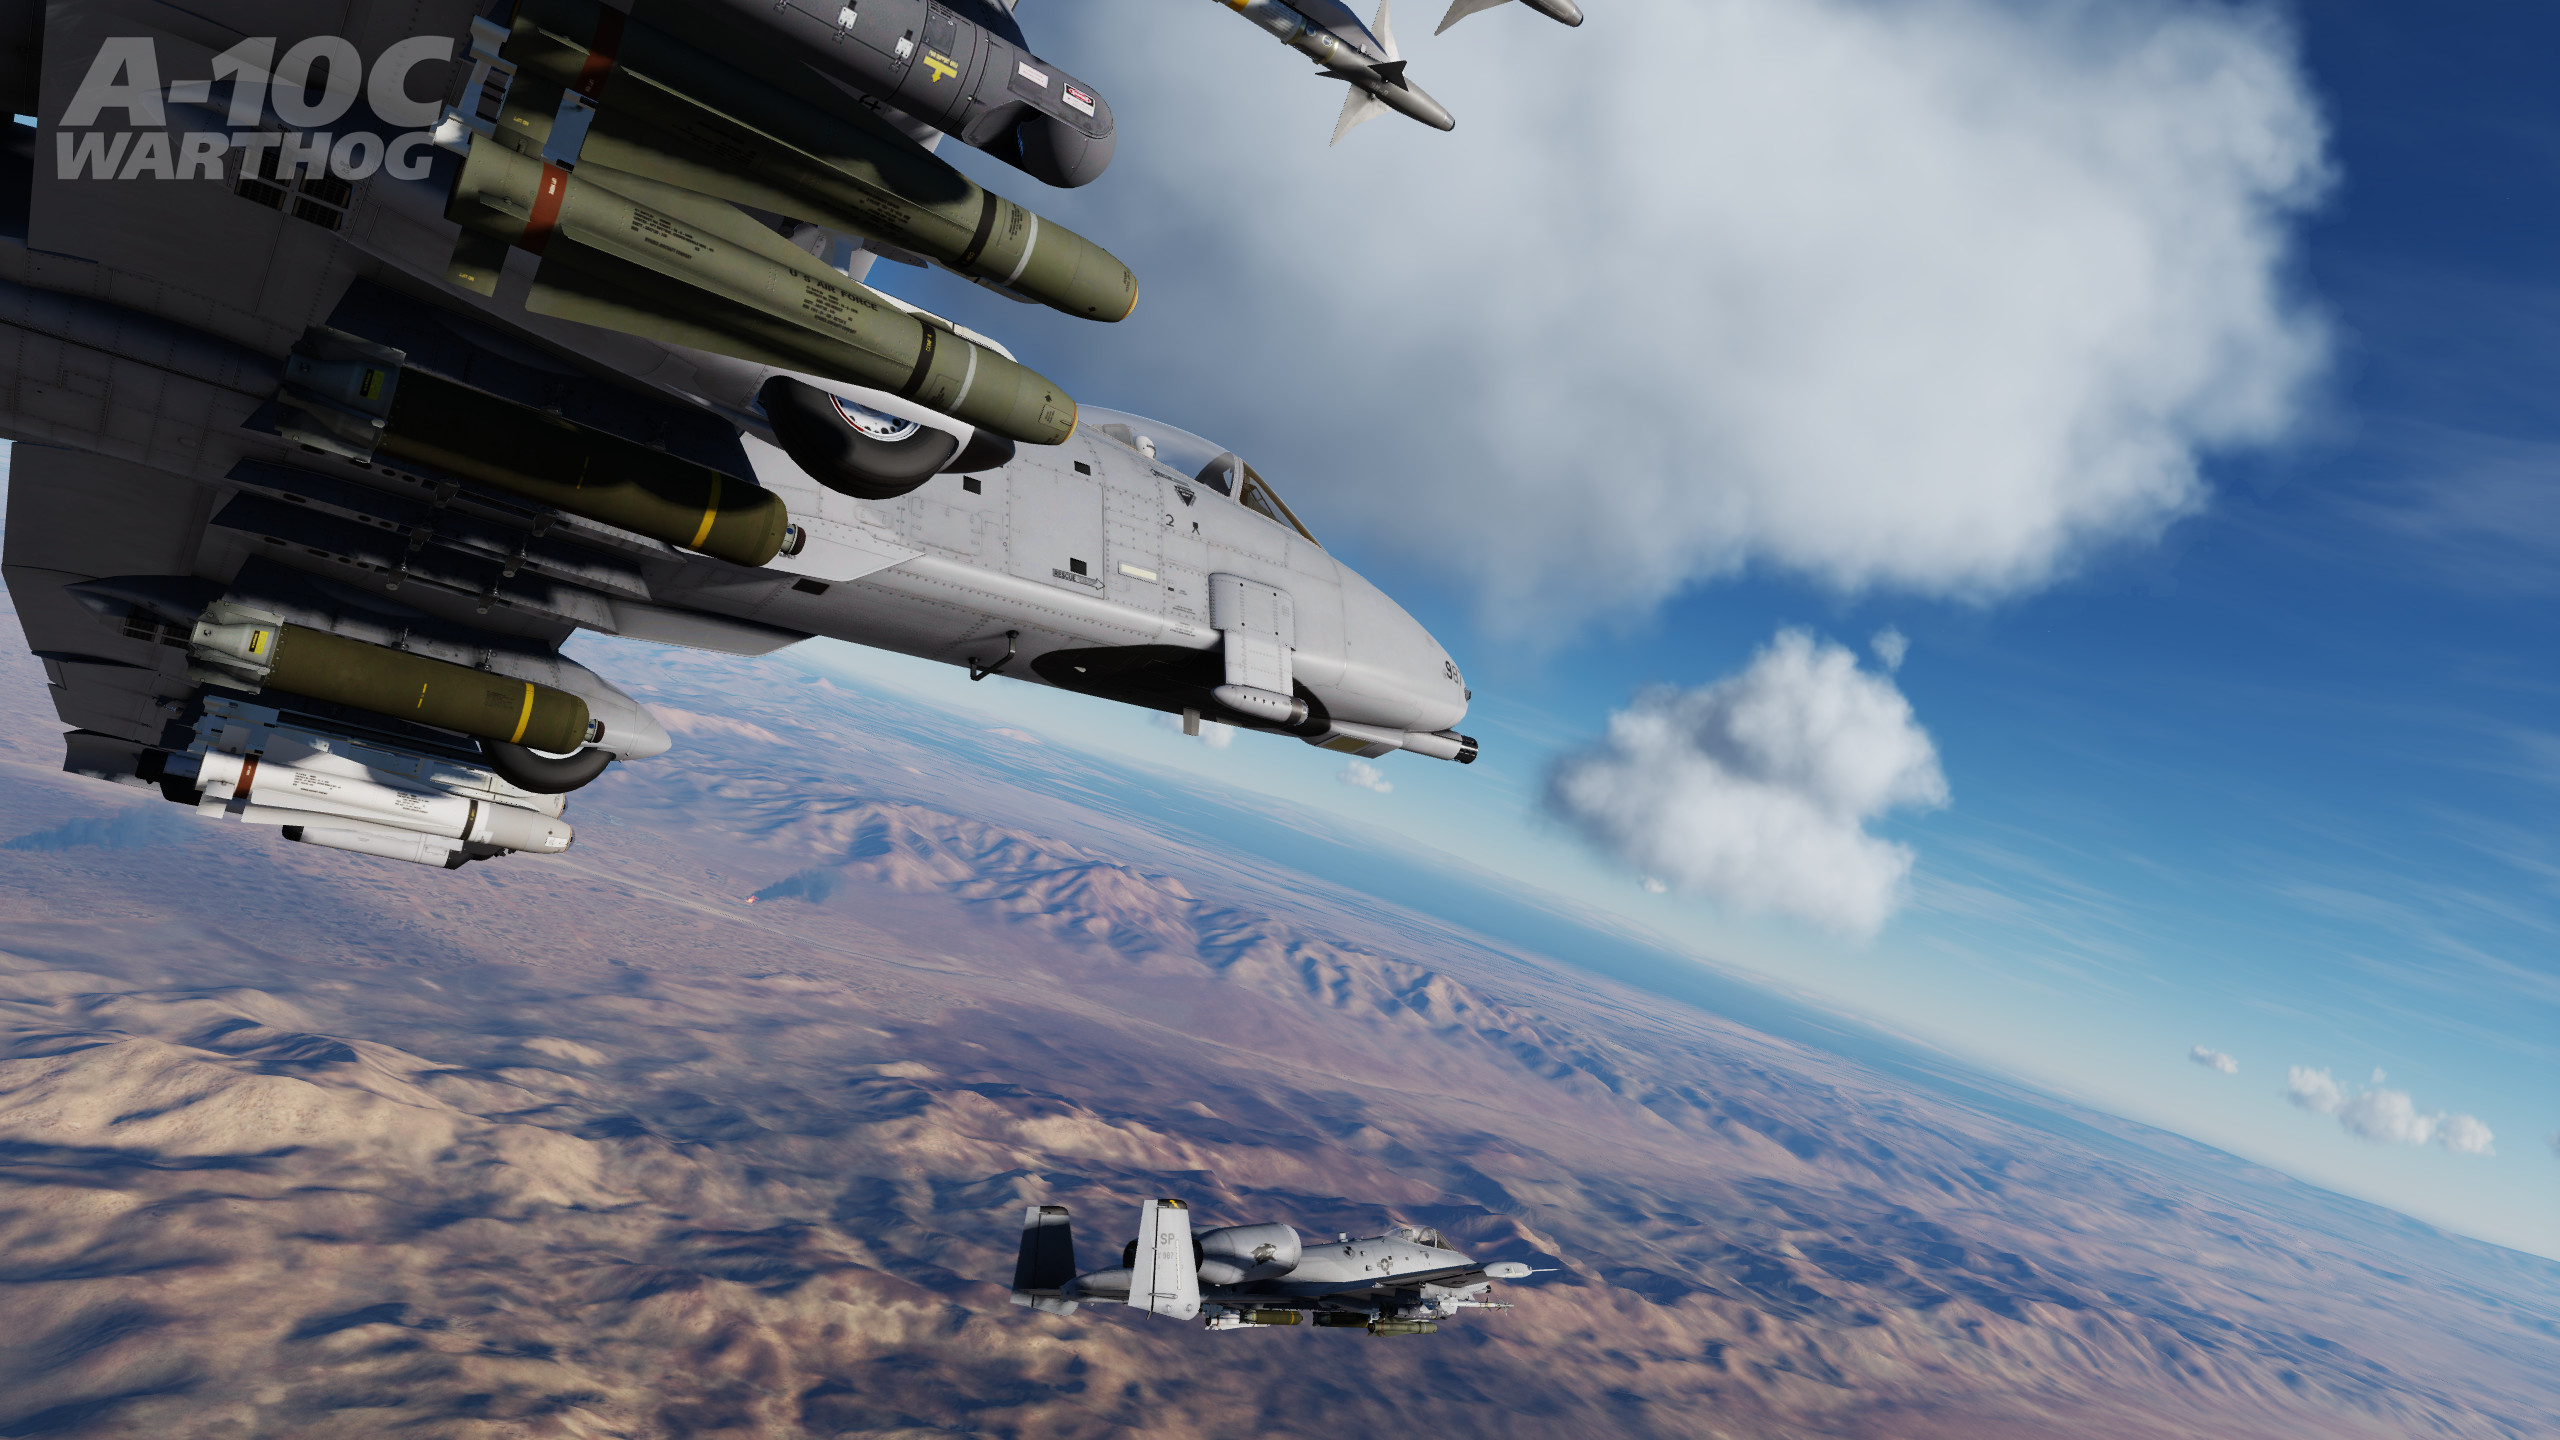 DCS: A-10C Warthog screenshot